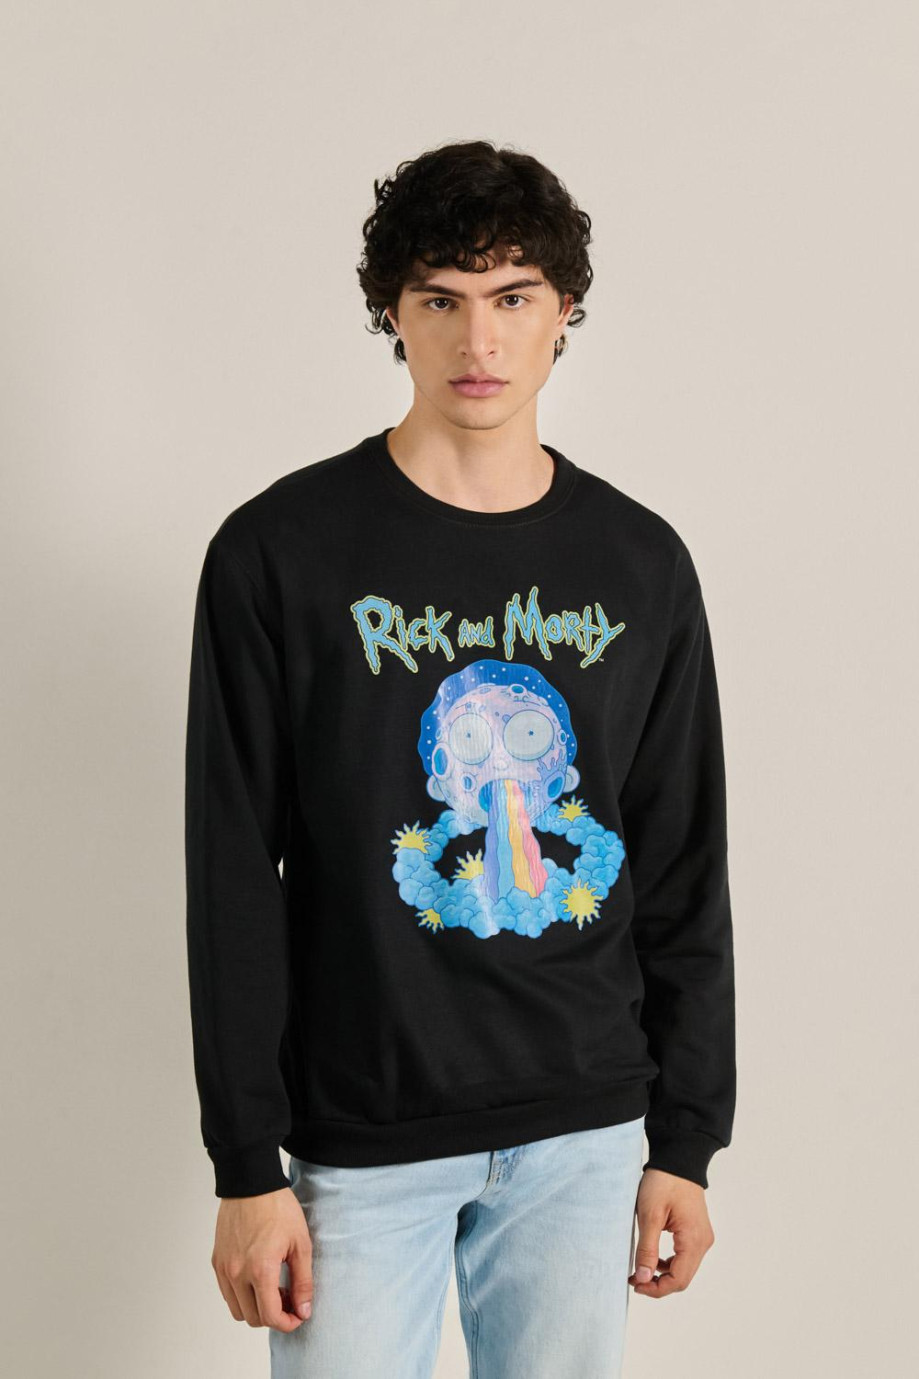 Buzo unicolor con cuello redondo y diseño de Rick and Morty